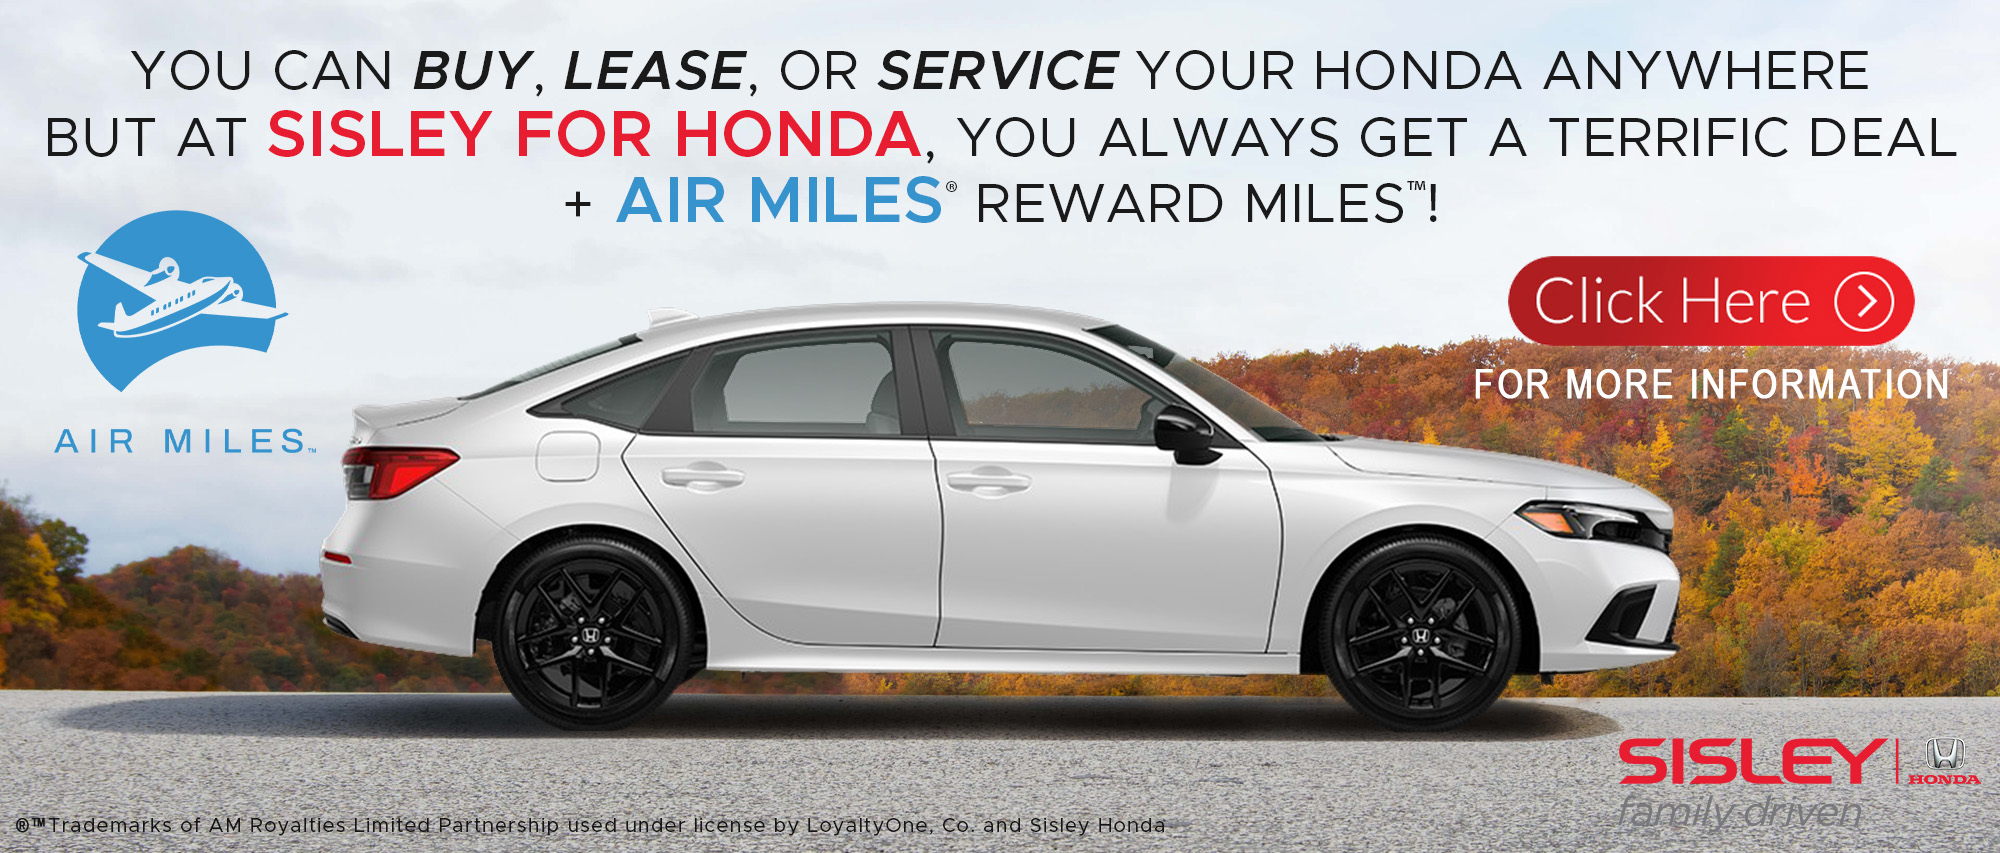 At Sisley for Honda, you get a fantastic deal PLUS AIR MILES Reward Miles!